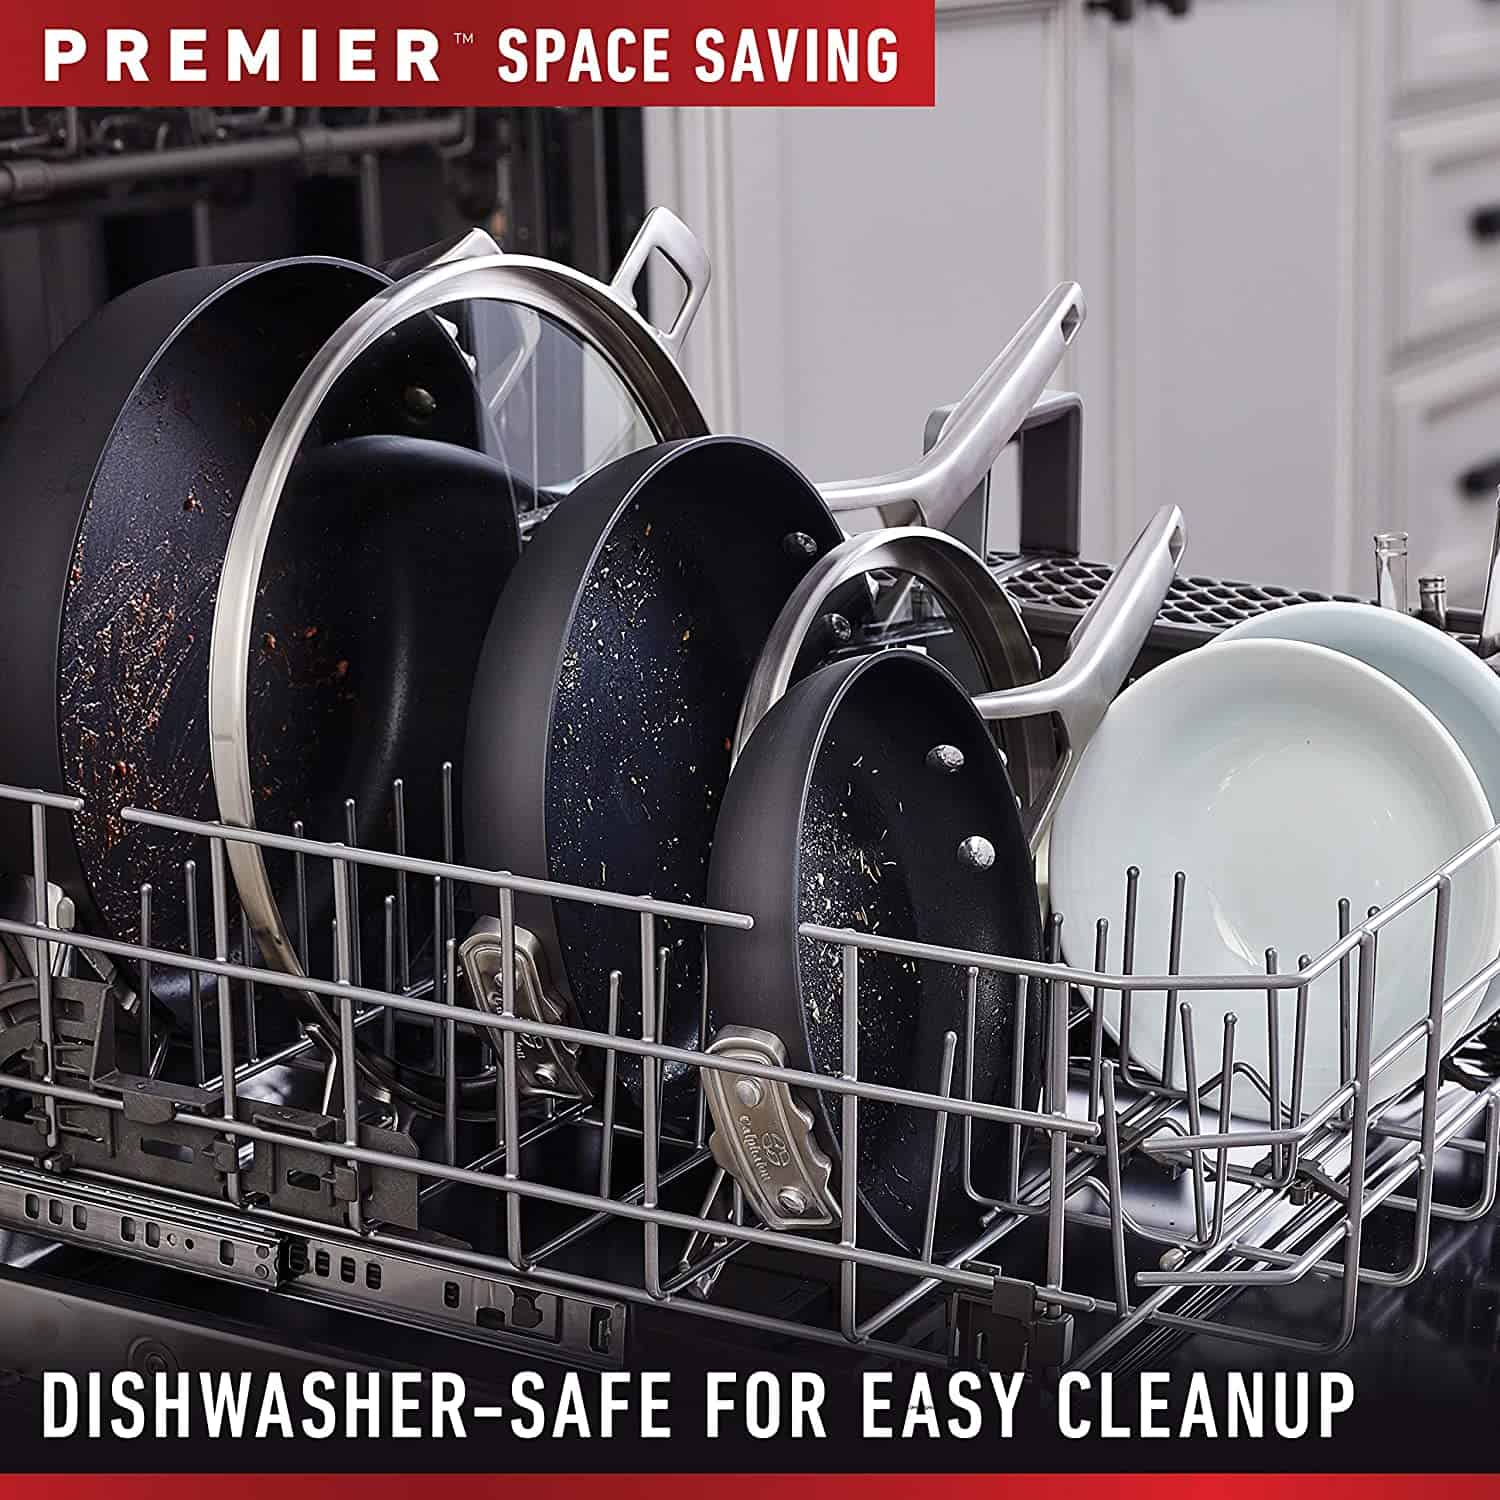 Calphalon dishwasher safe